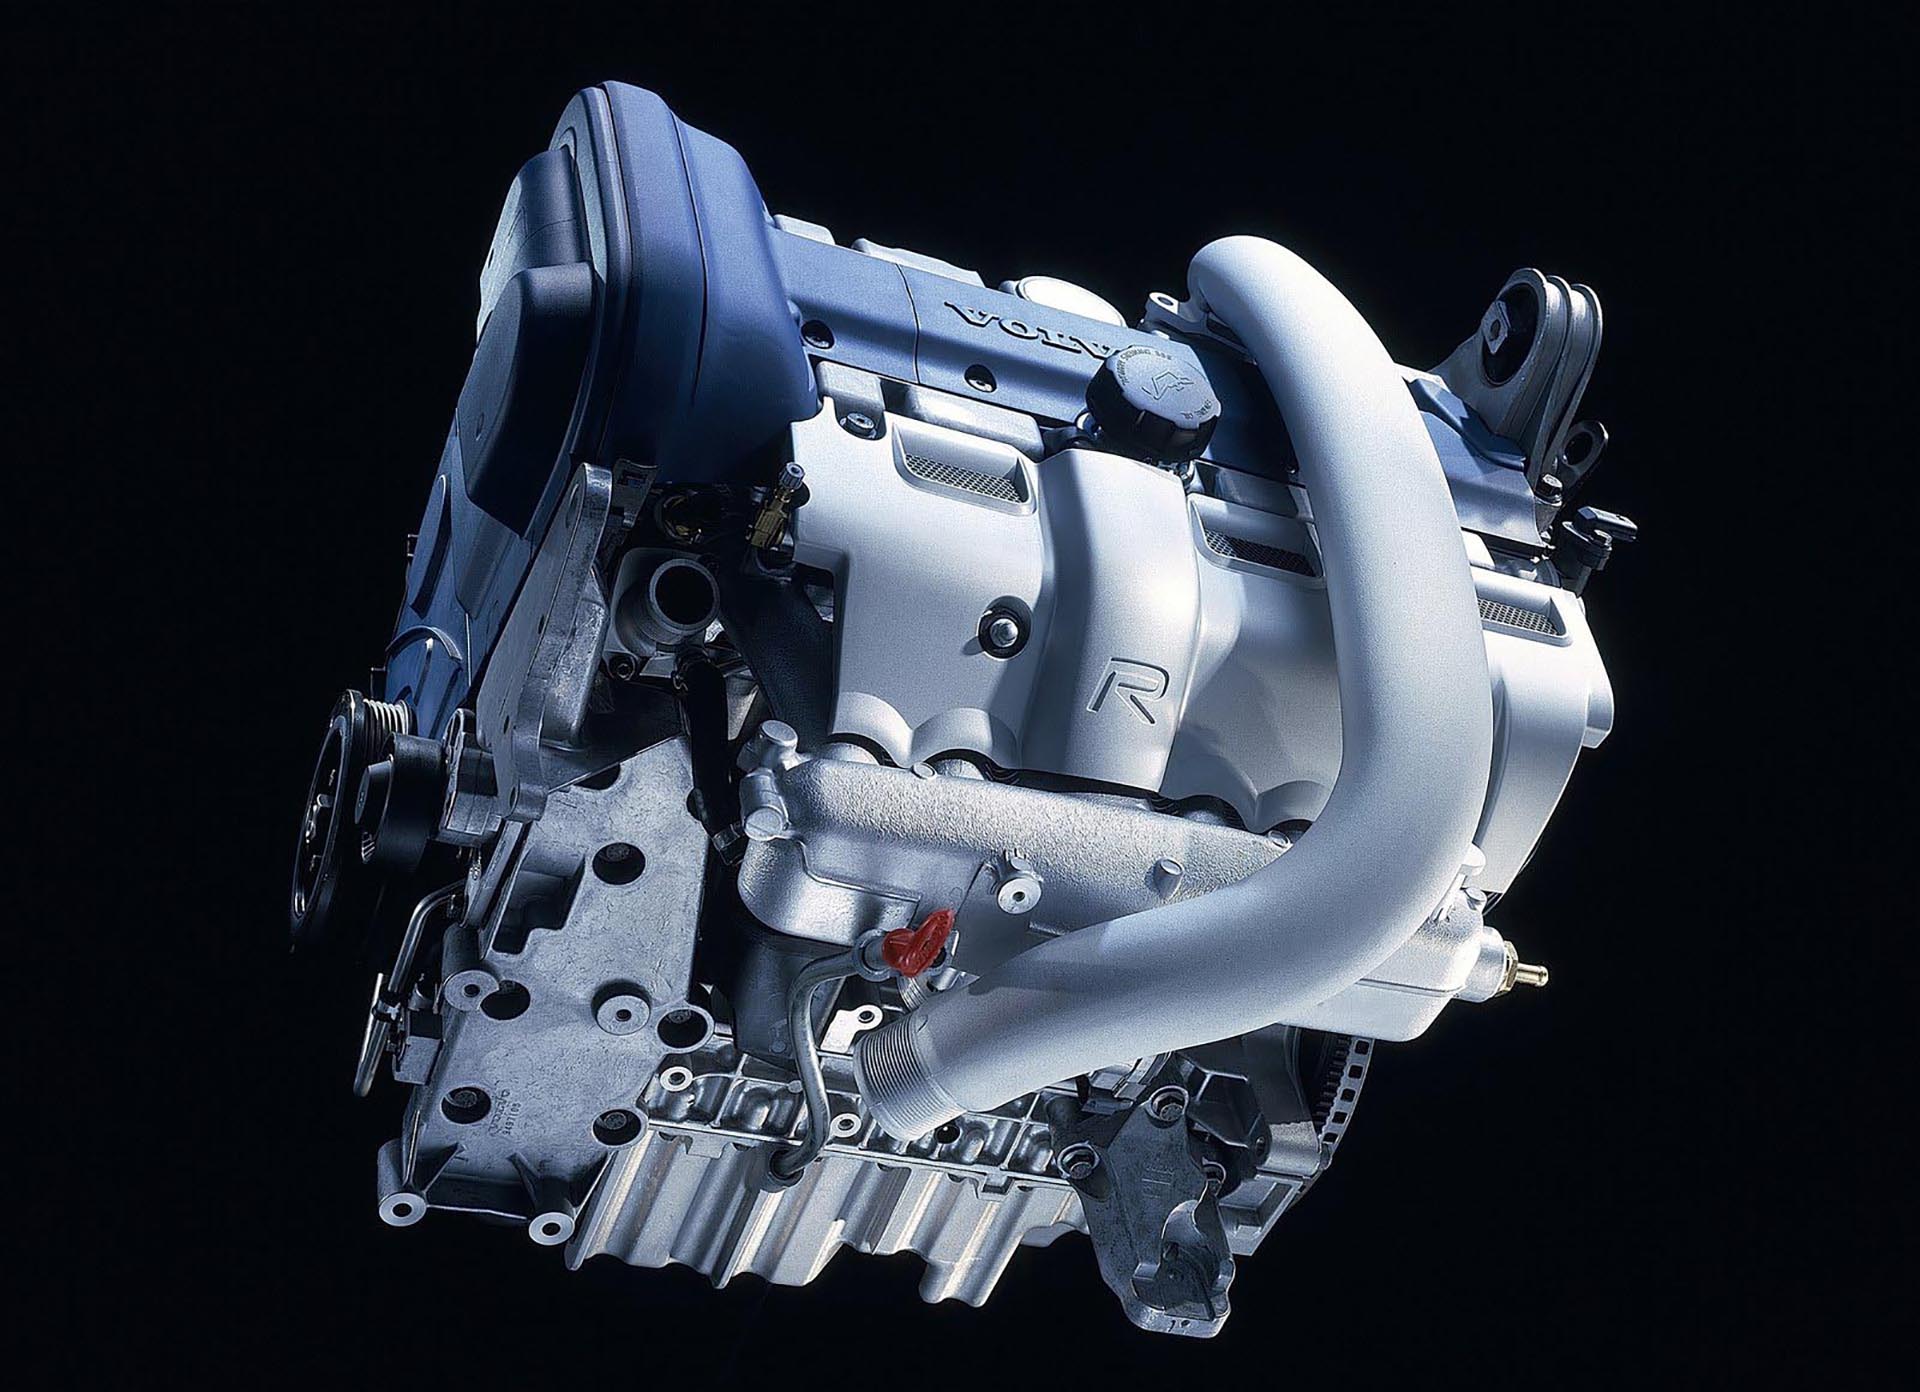 06_Volvo S60 R Whiteblock engine